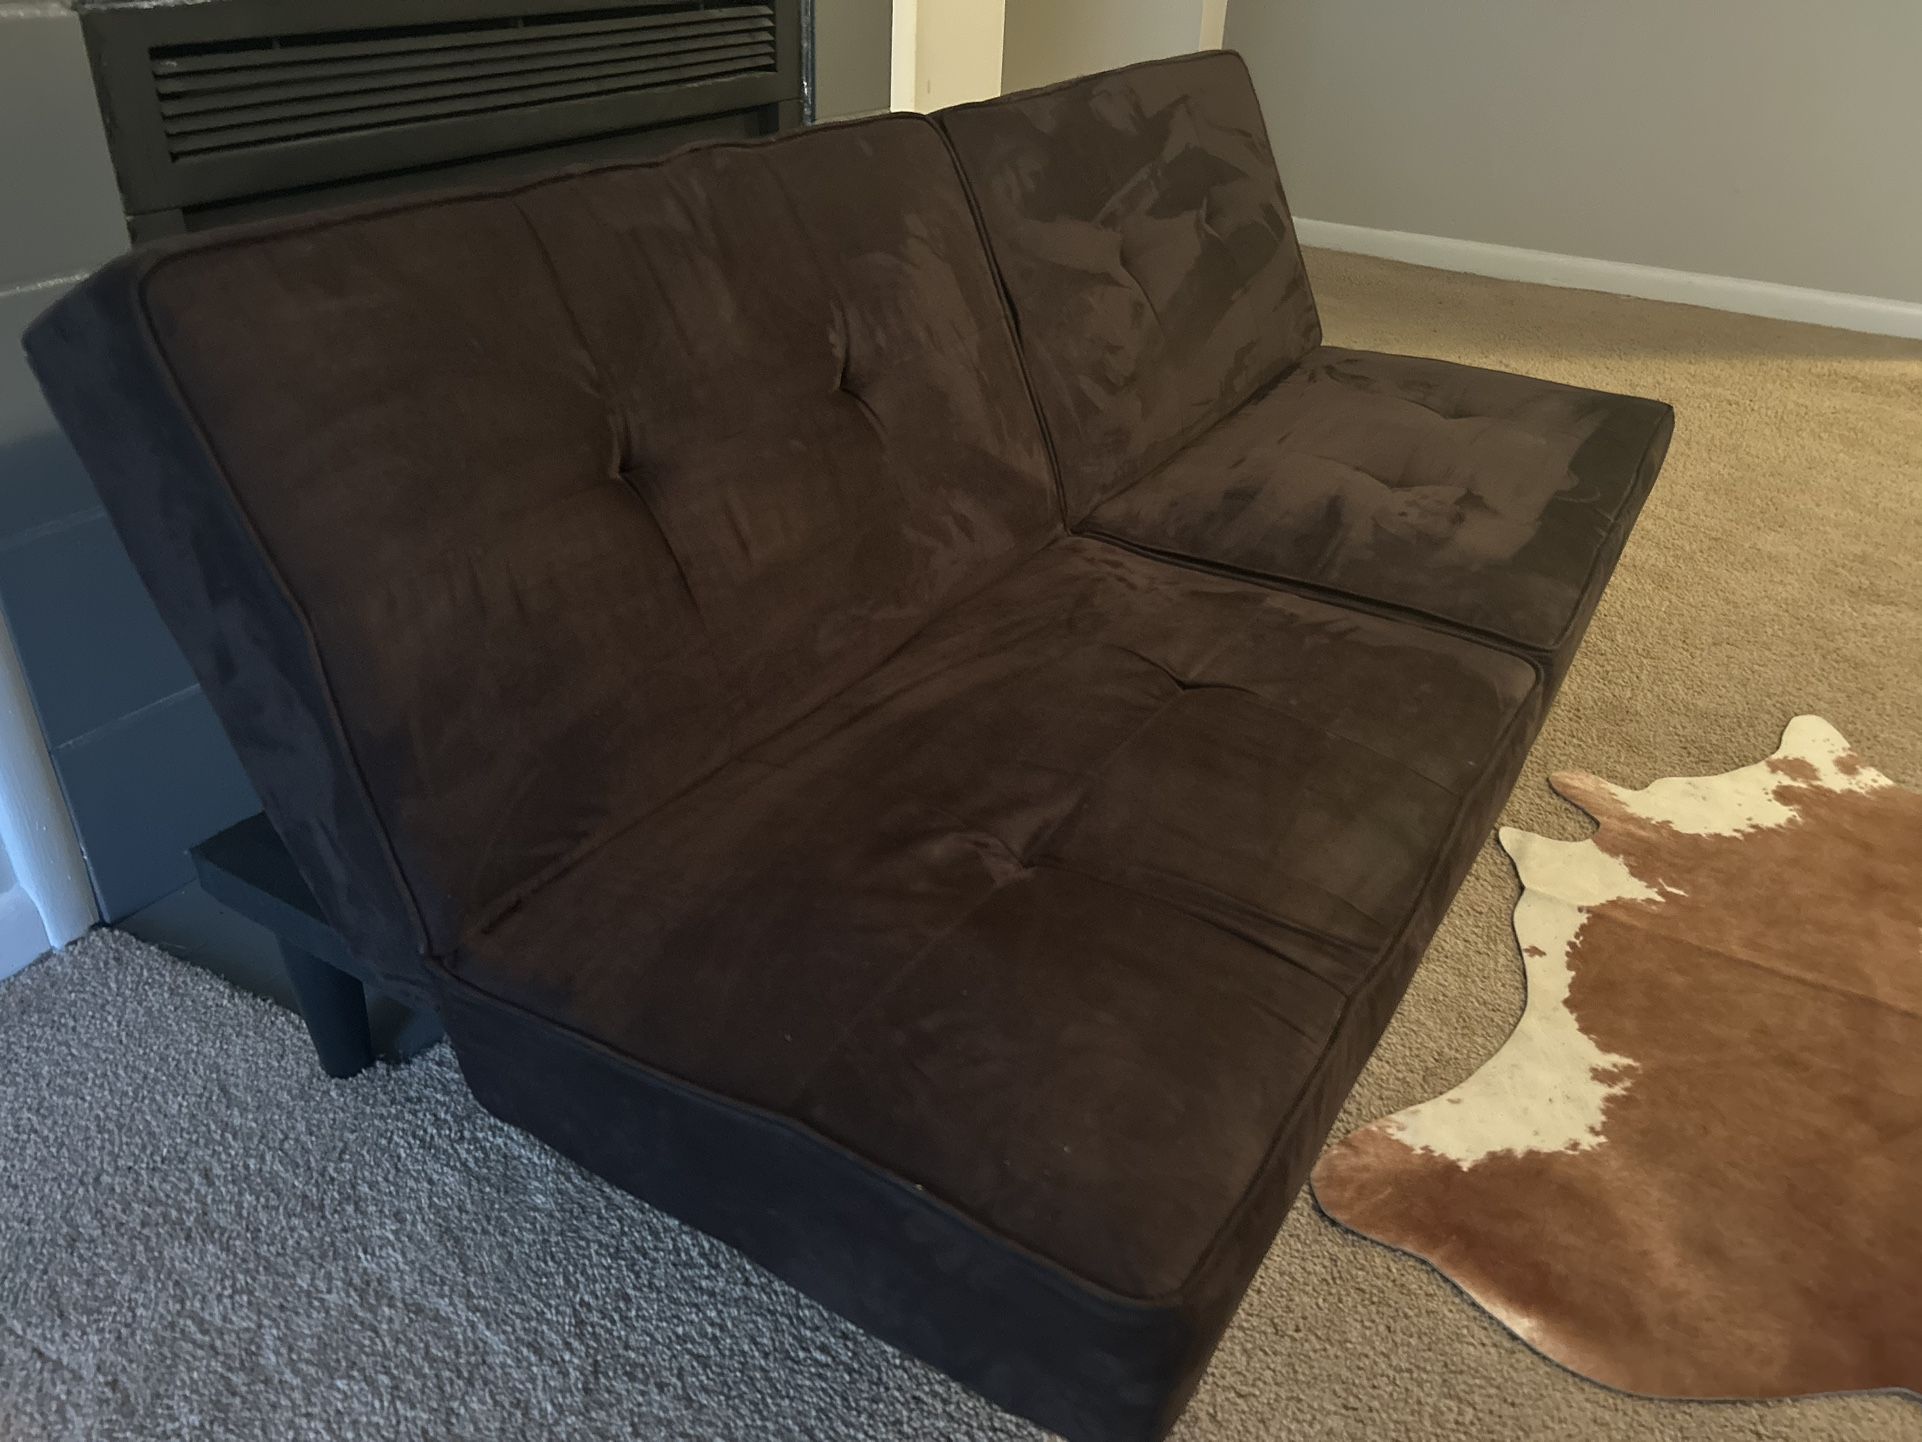 Adjustable futon